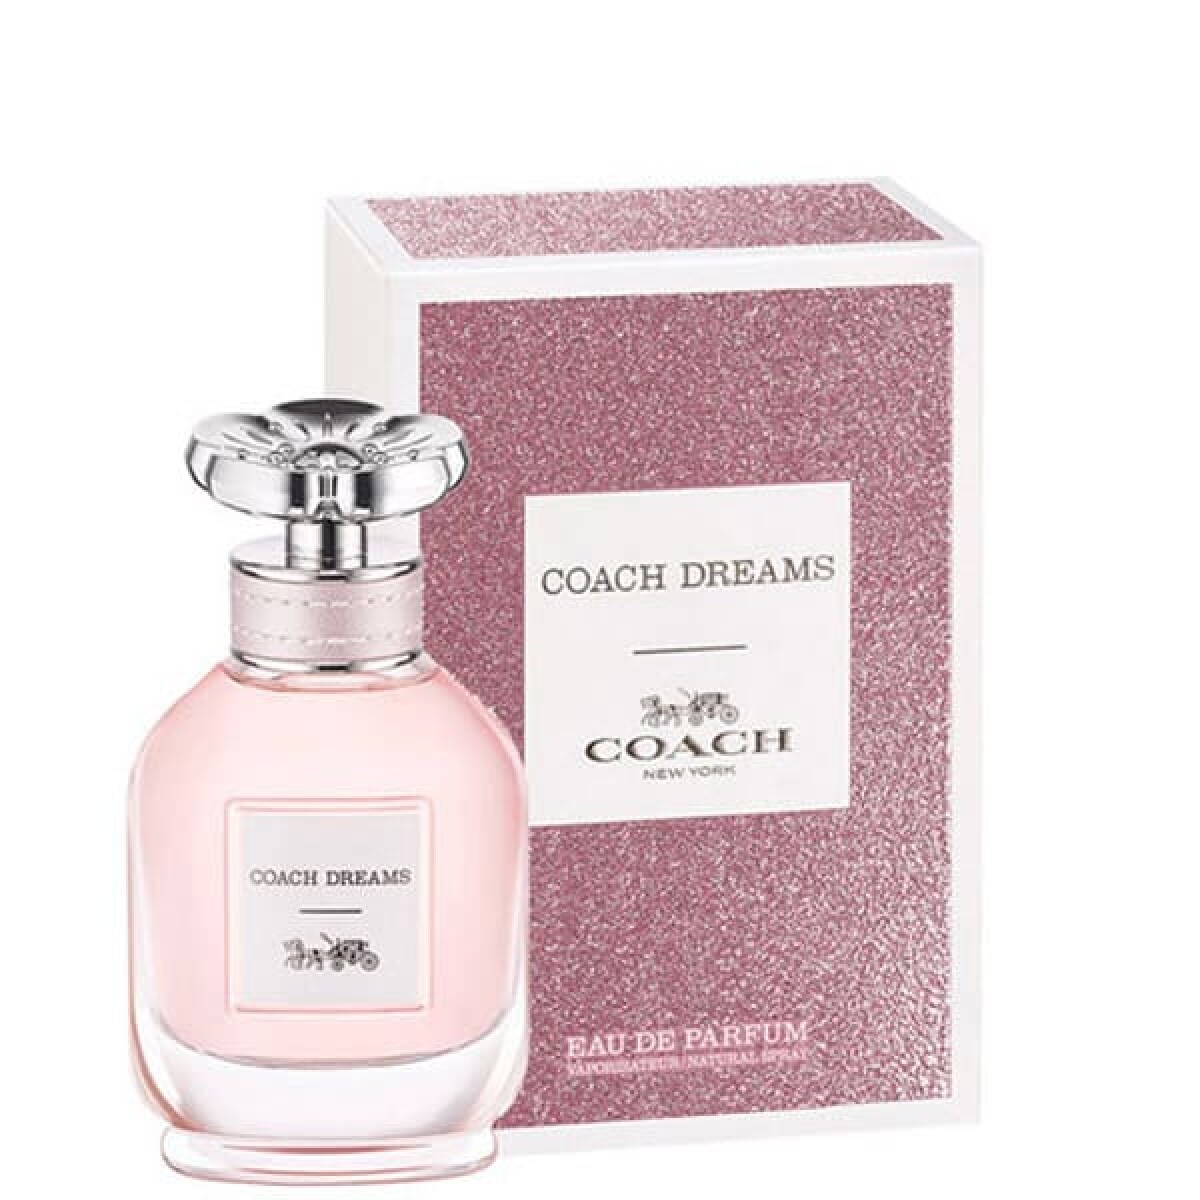 Perfume Coach Dreams Edp 50 ml 